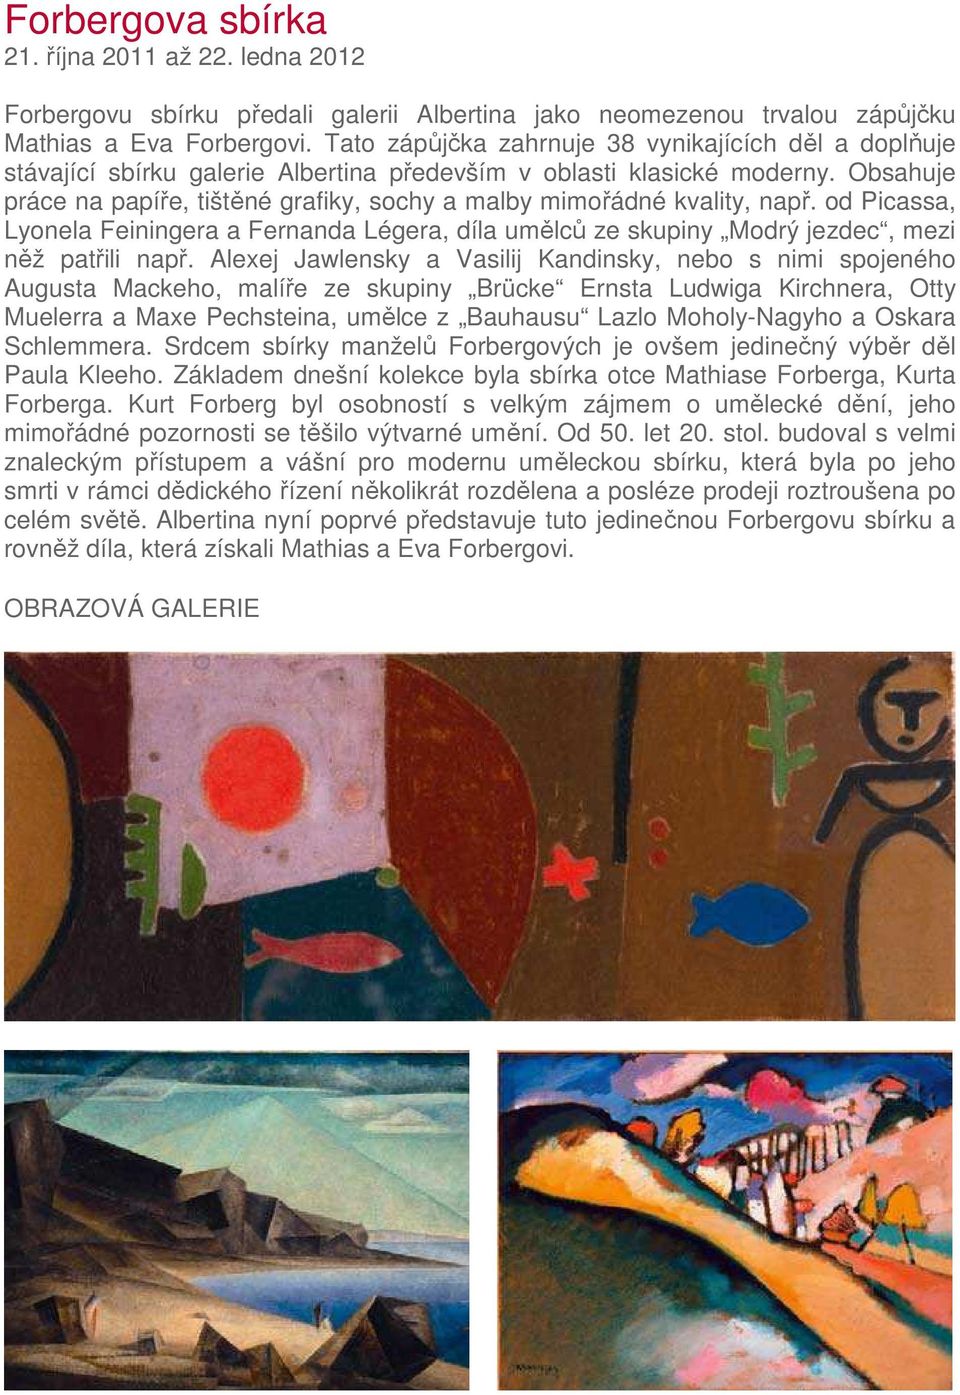 Obsahuje práce na papíře, tištěné grafiky, sochy a malby mimořádné kvality, např. od Picassa, Lyonela Feiningera a Fernanda Légera, díla umělců ze skupiny Modrý jezdec, mezi něž patřili např.